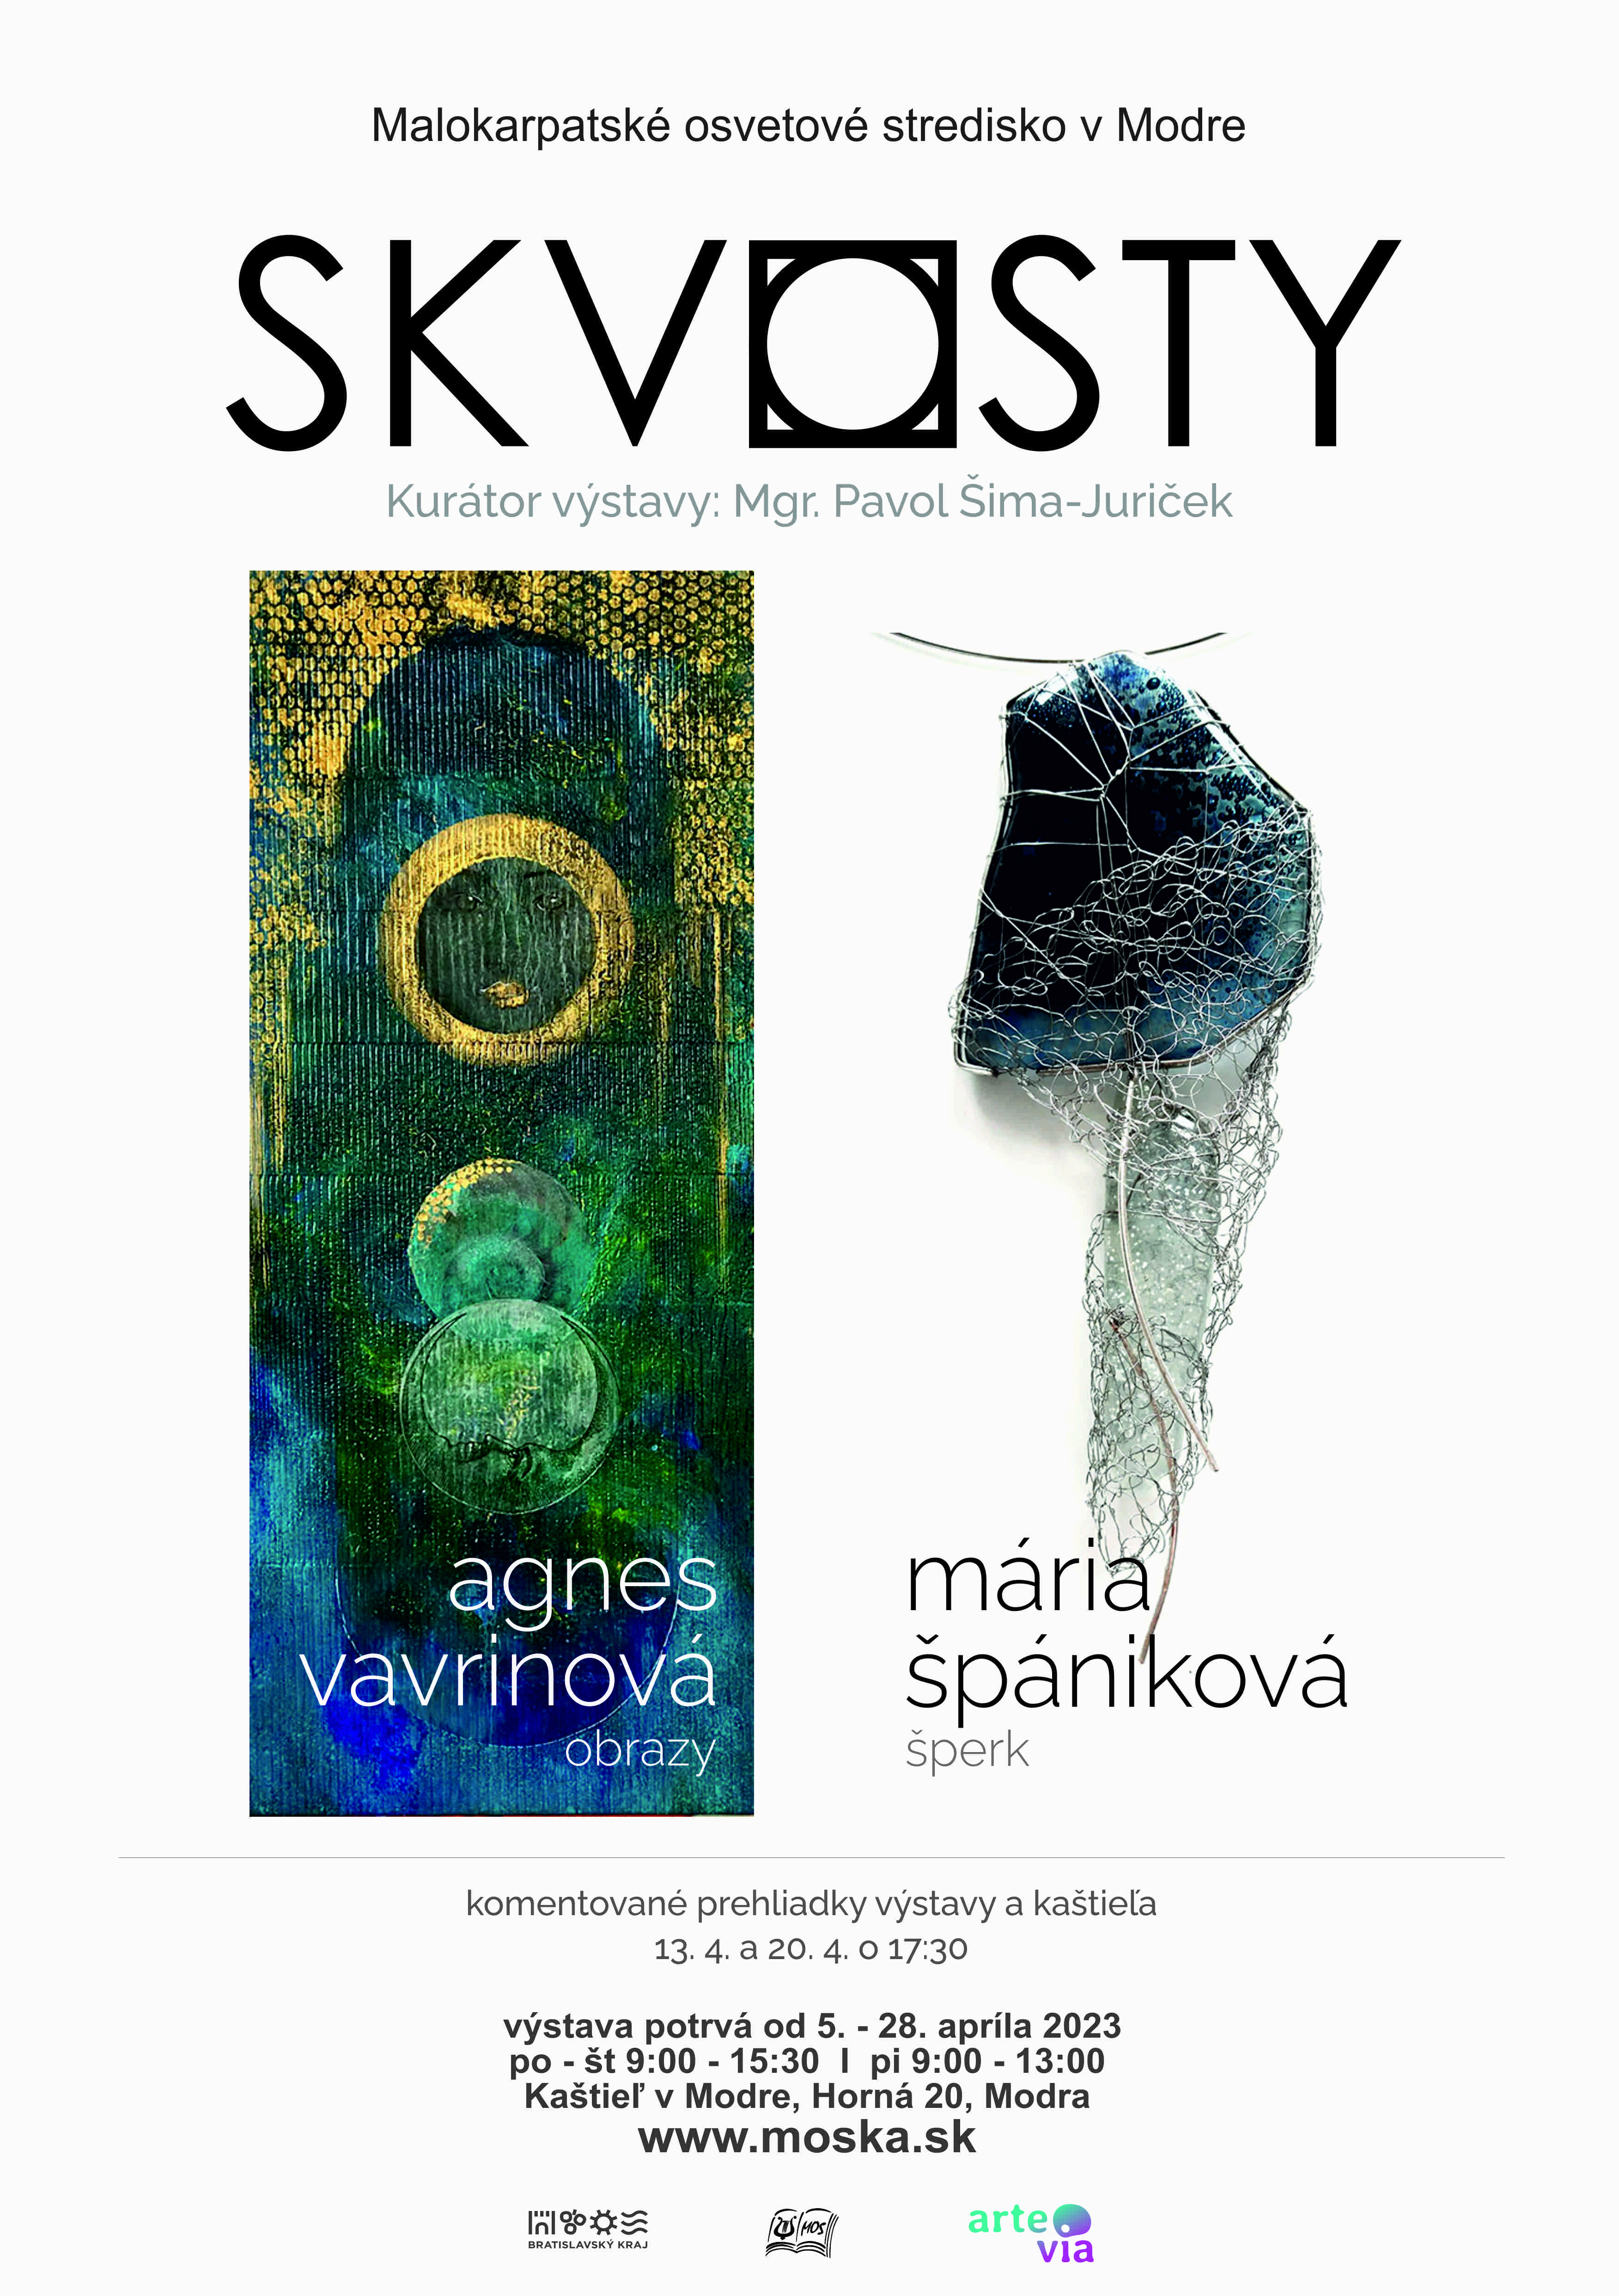 Malokarpatské osvetové stredisko v Modre Vás srdečne pozýva na spoločnú výstavu obrazov Agnes Vavrinovej a šperkov Márie Špánikovej